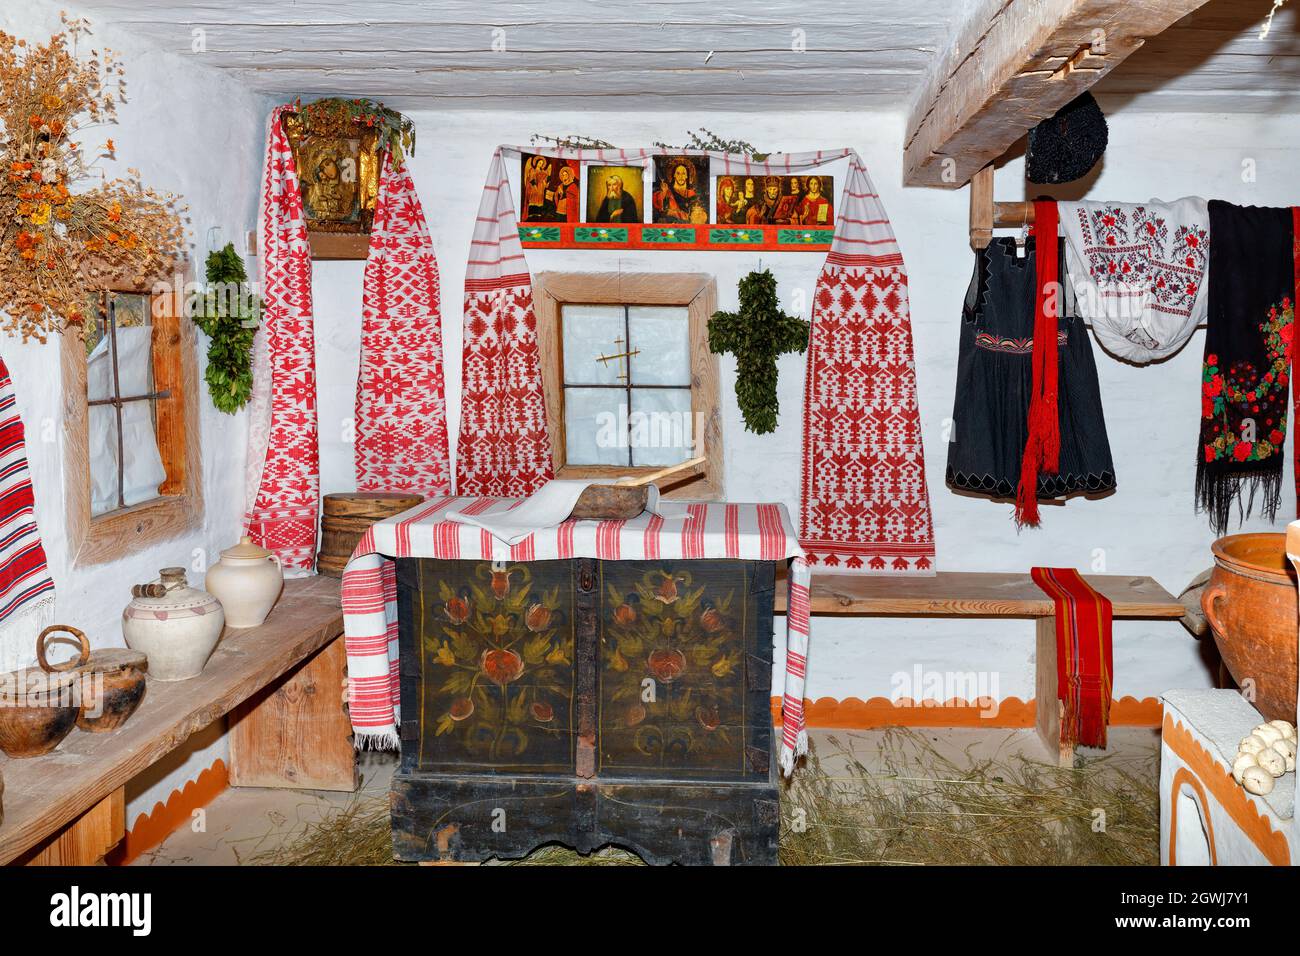 Das Innere der Wohnräume einer antiken ukrainischen ländlichen Hütte mit heiligen Bildern über dem Fenster und alten Kleidern und Geschirr. Stockfoto